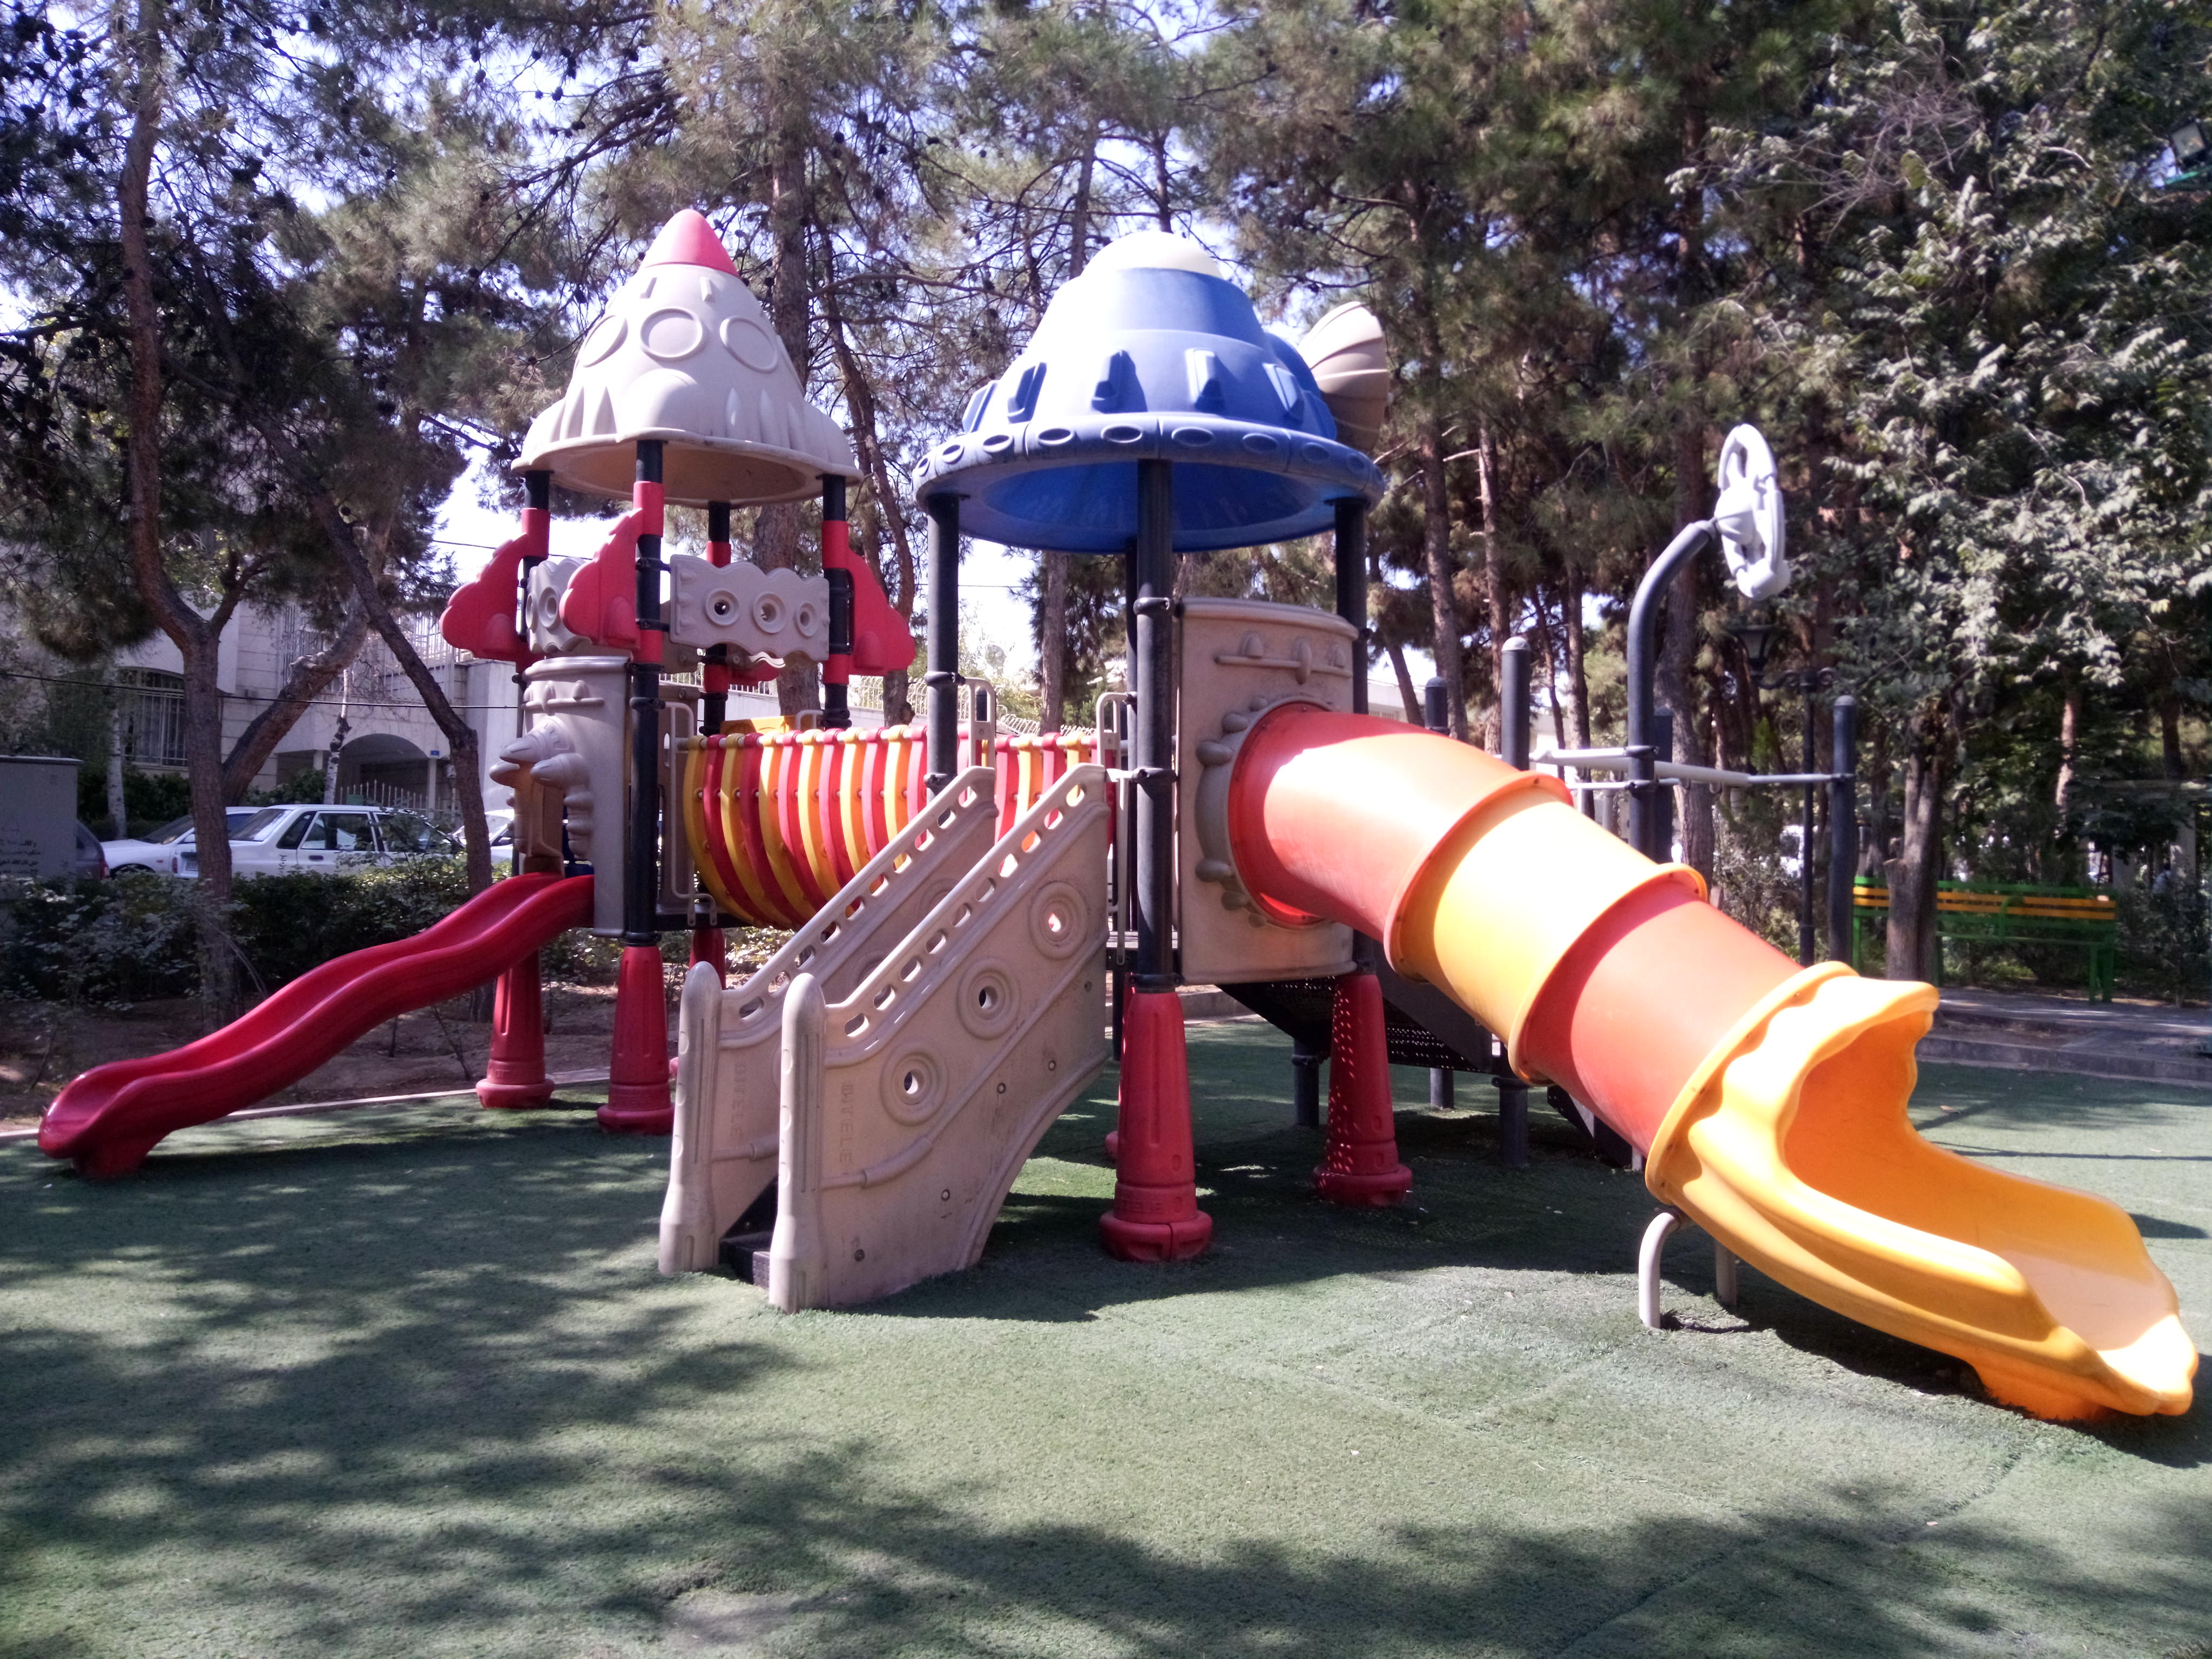 نمونه عکس دوربین اصلی جی پلاس Q10 - زمین بازی کودک پارک صبا خیابان جردن